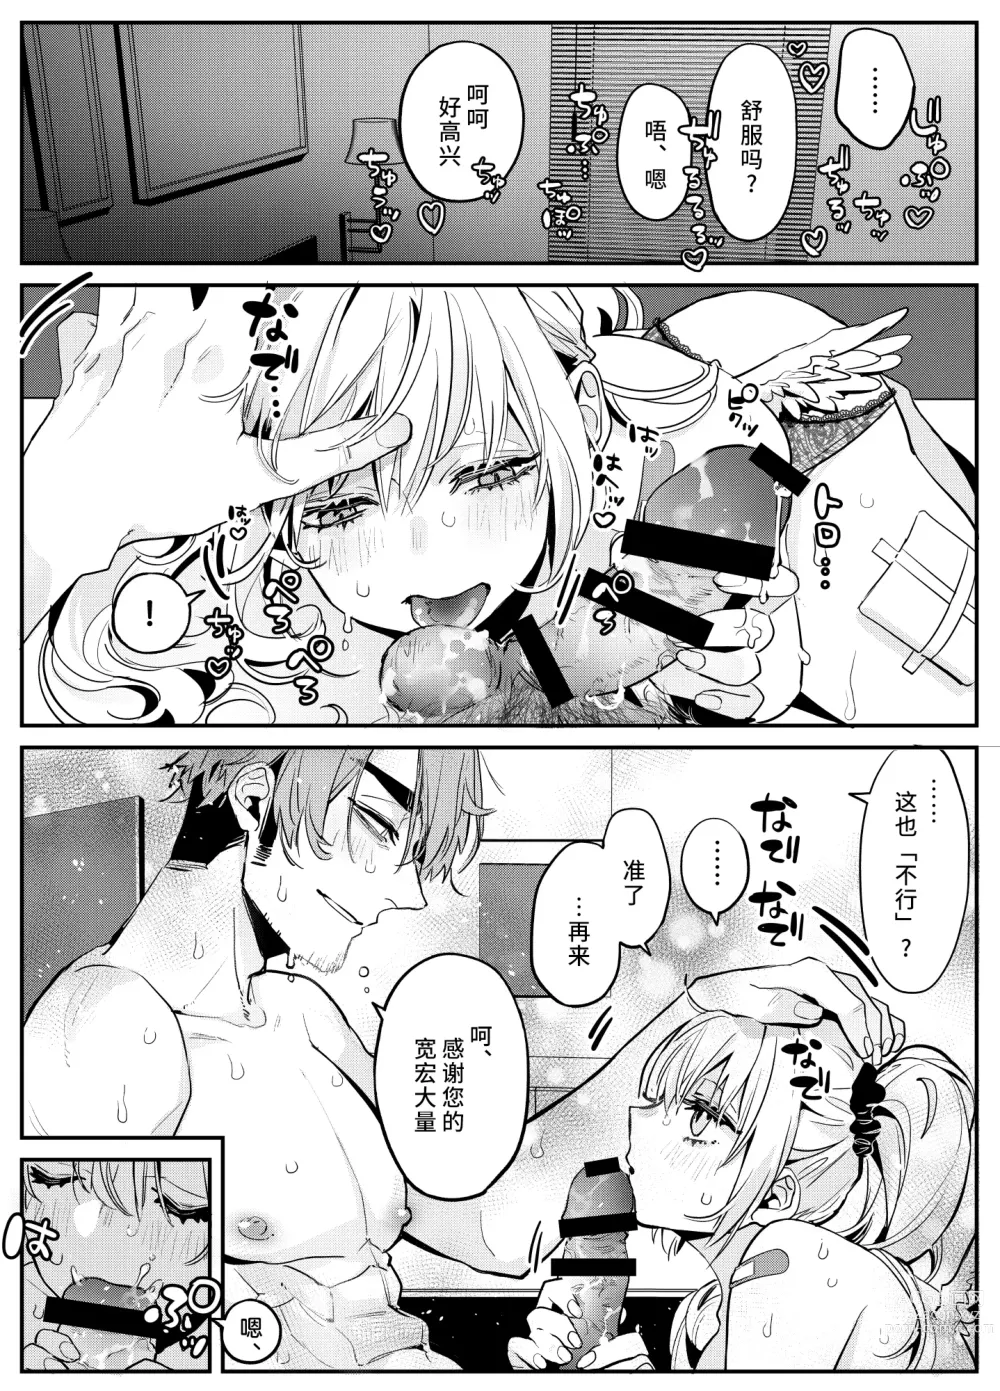 Page 4 of manga 关于沉浸在激烈口交游戏中将浓精射入嘴里的恋人的事